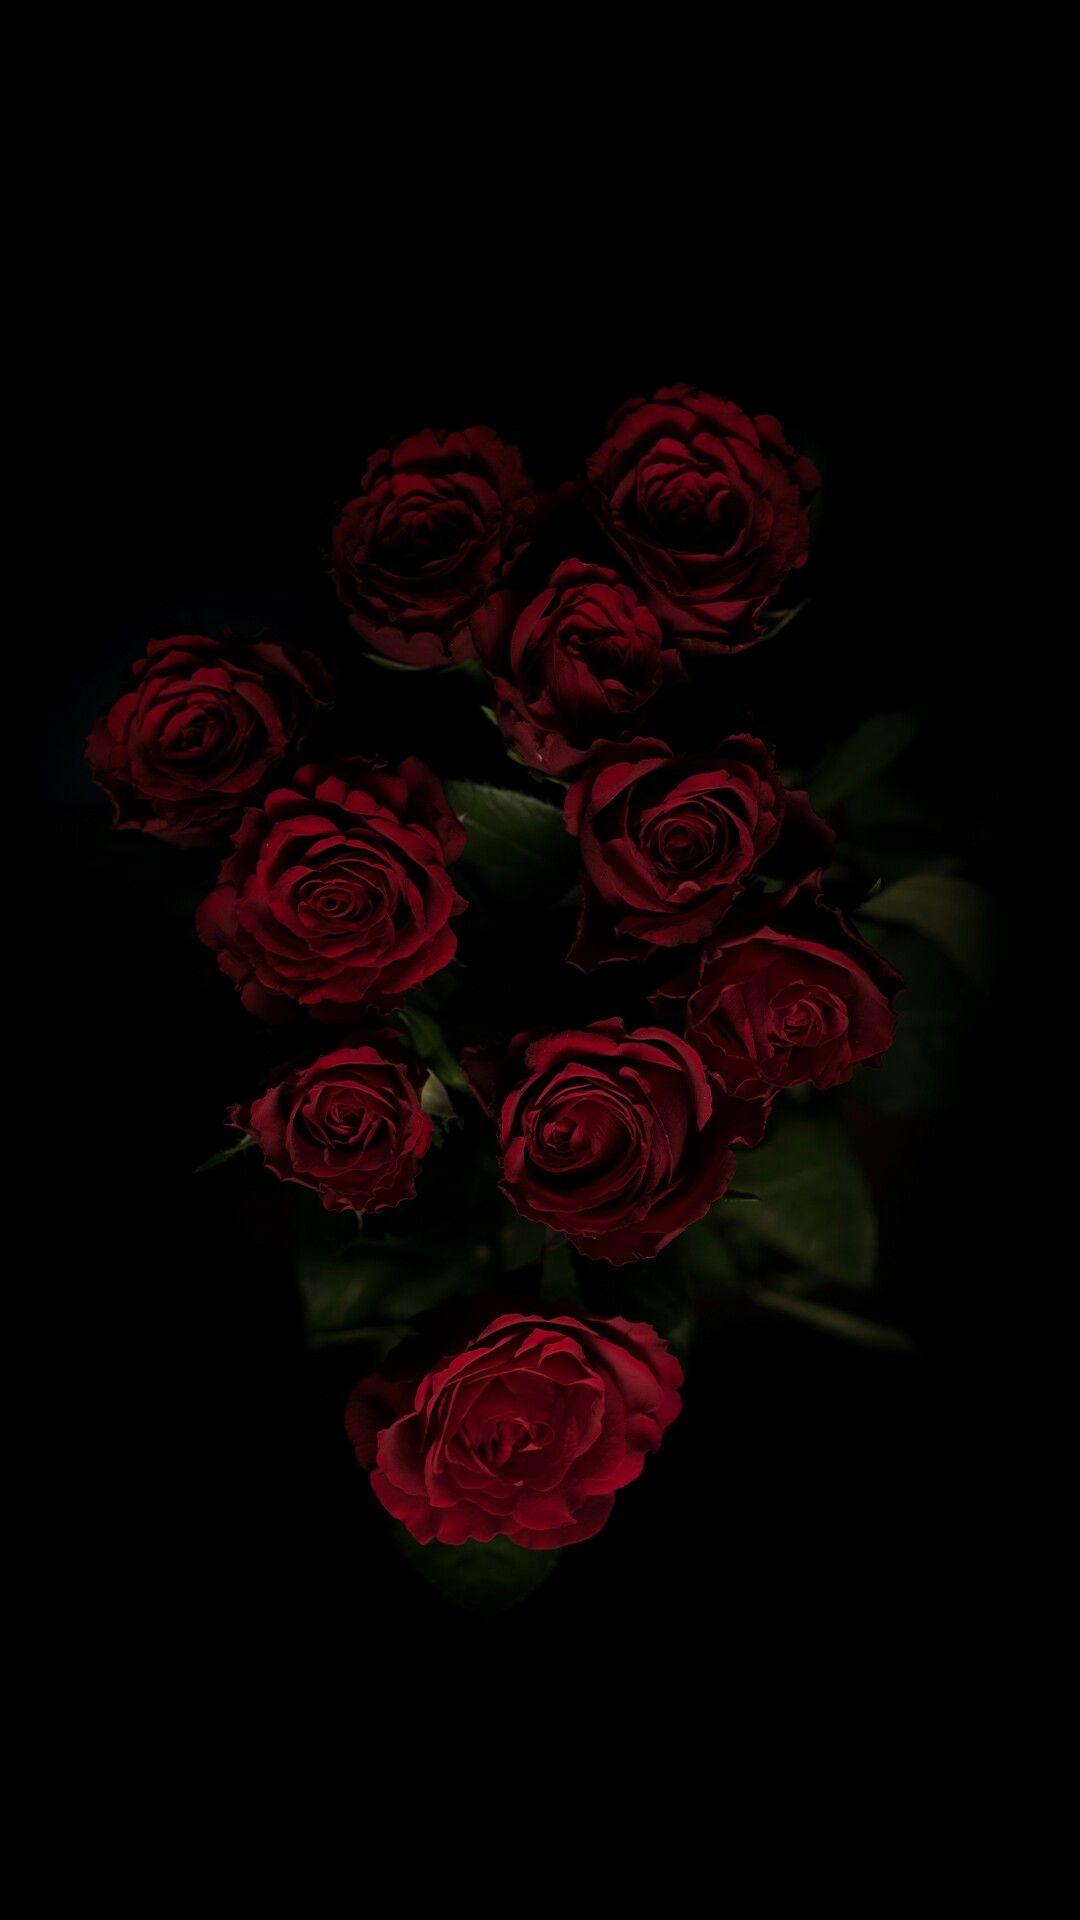 Black rose. Nature iphone wallpaper, Rose wallpaper, Black